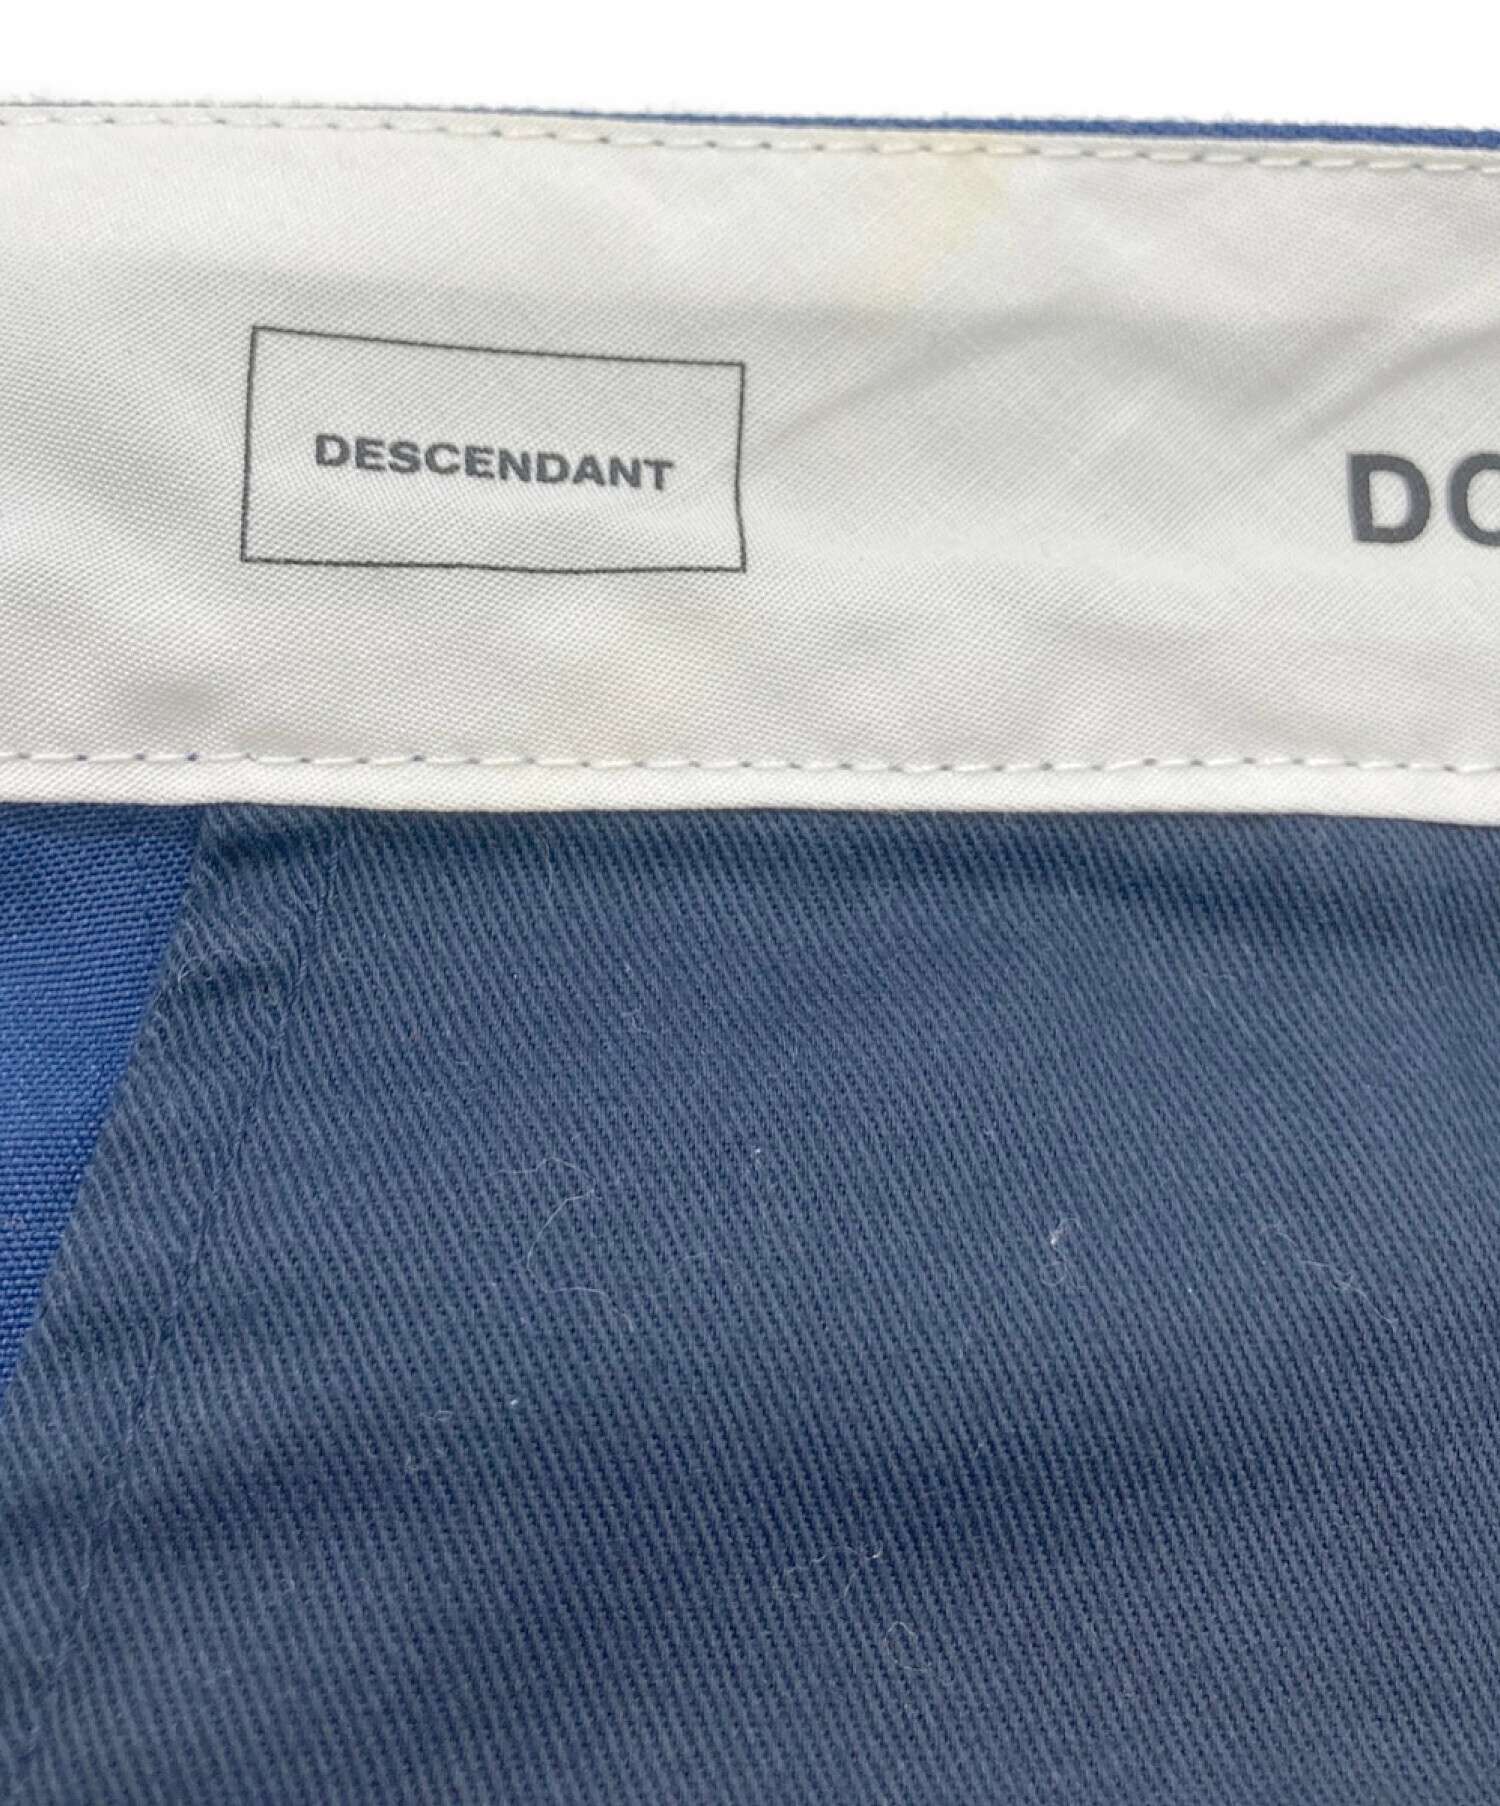 DESCENDANT (ディセンダント) DC-3 wide ネイビー サイズ:3